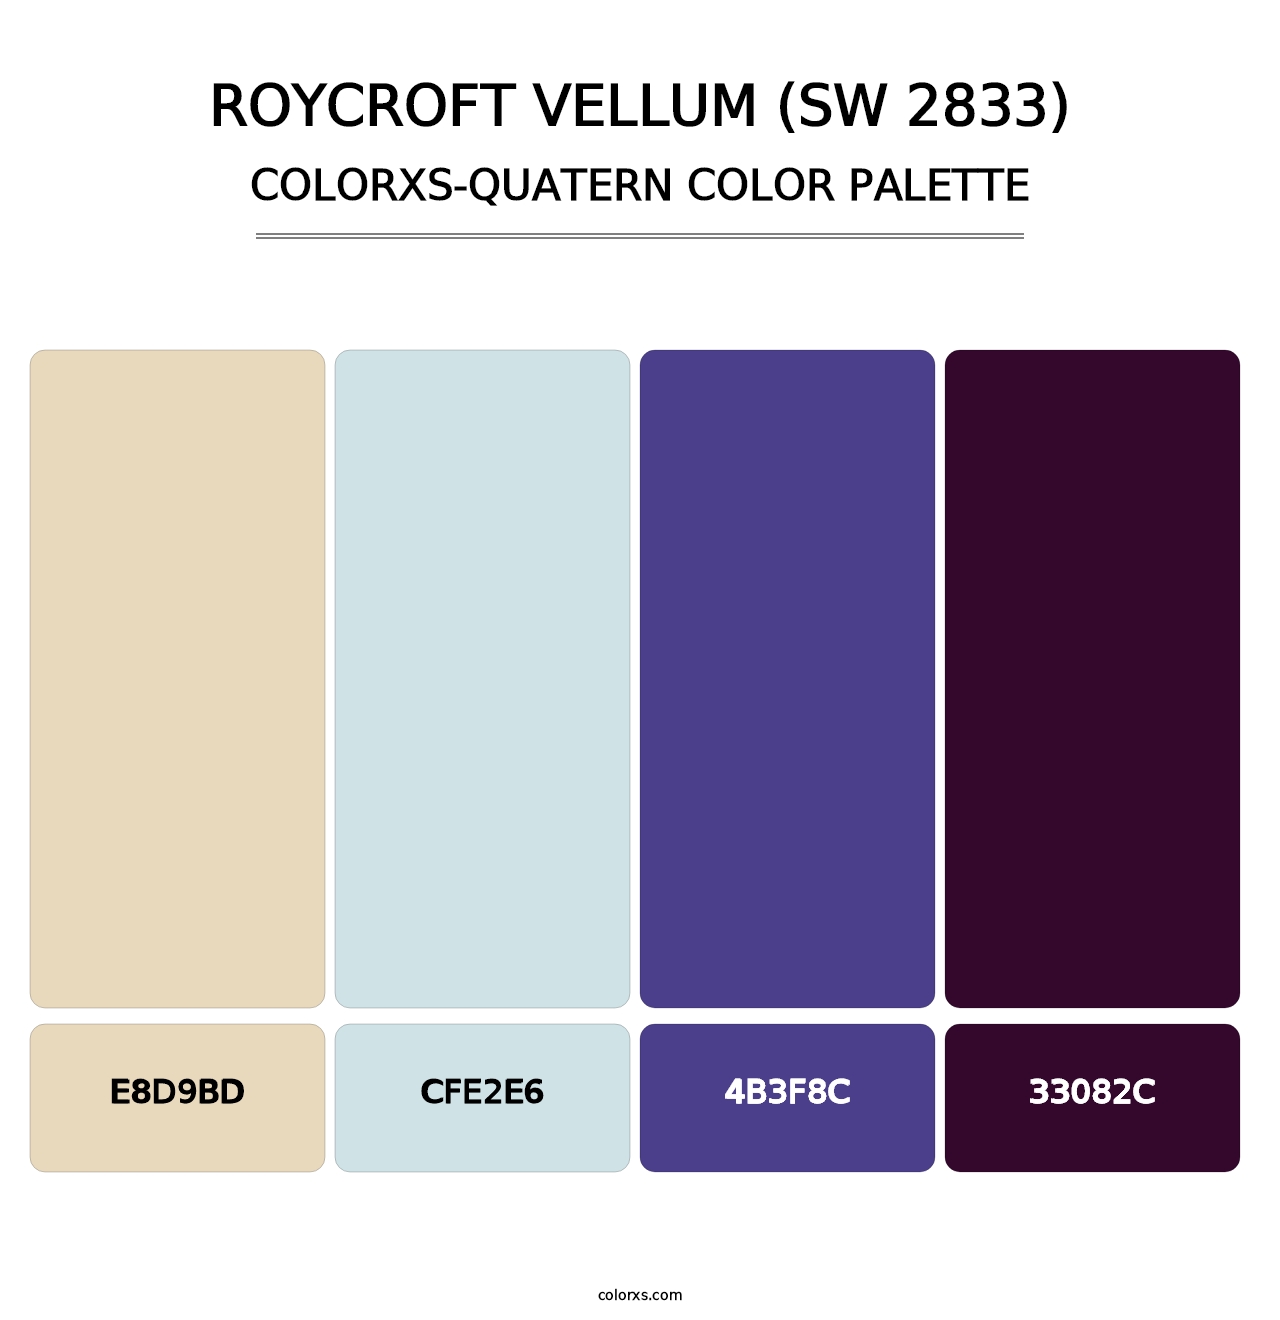 Roycroft Vellum (SW 2833) - Colorxs Quatern Palette